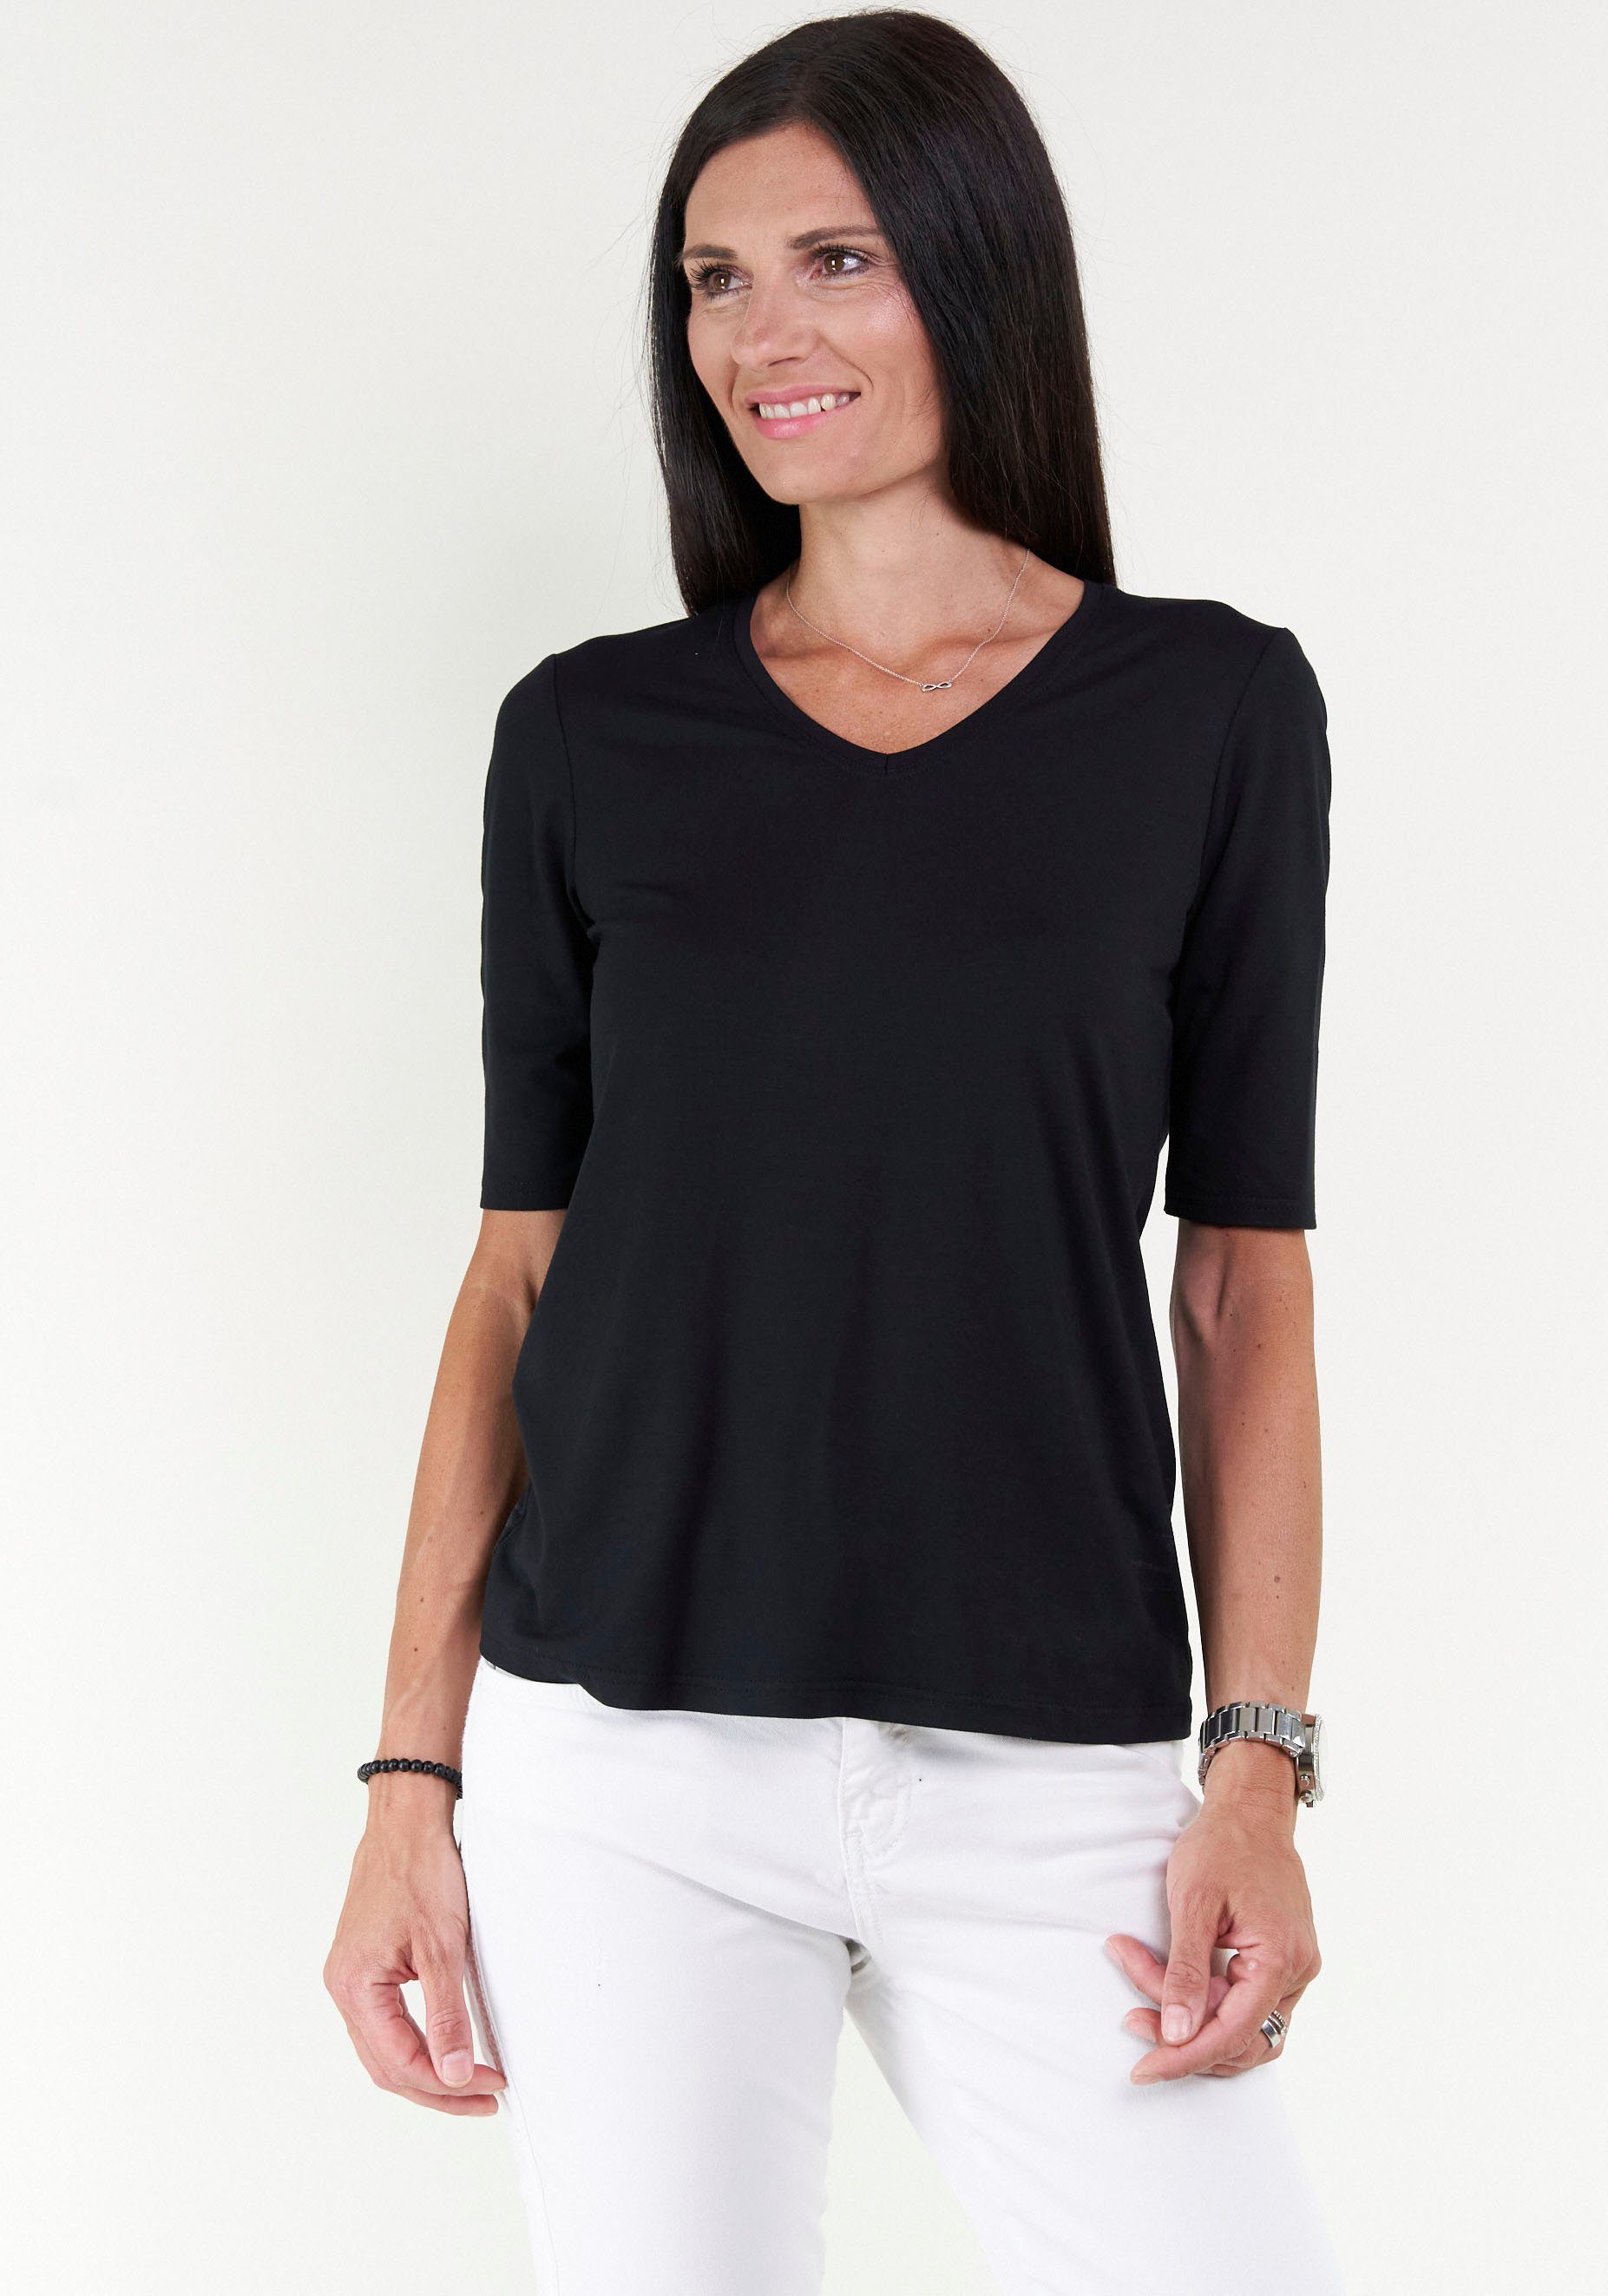 Seidel Moden V-Shirt mit Halbarm aus softem Material, MADE IN GERMANY schwarz | V-Shirts